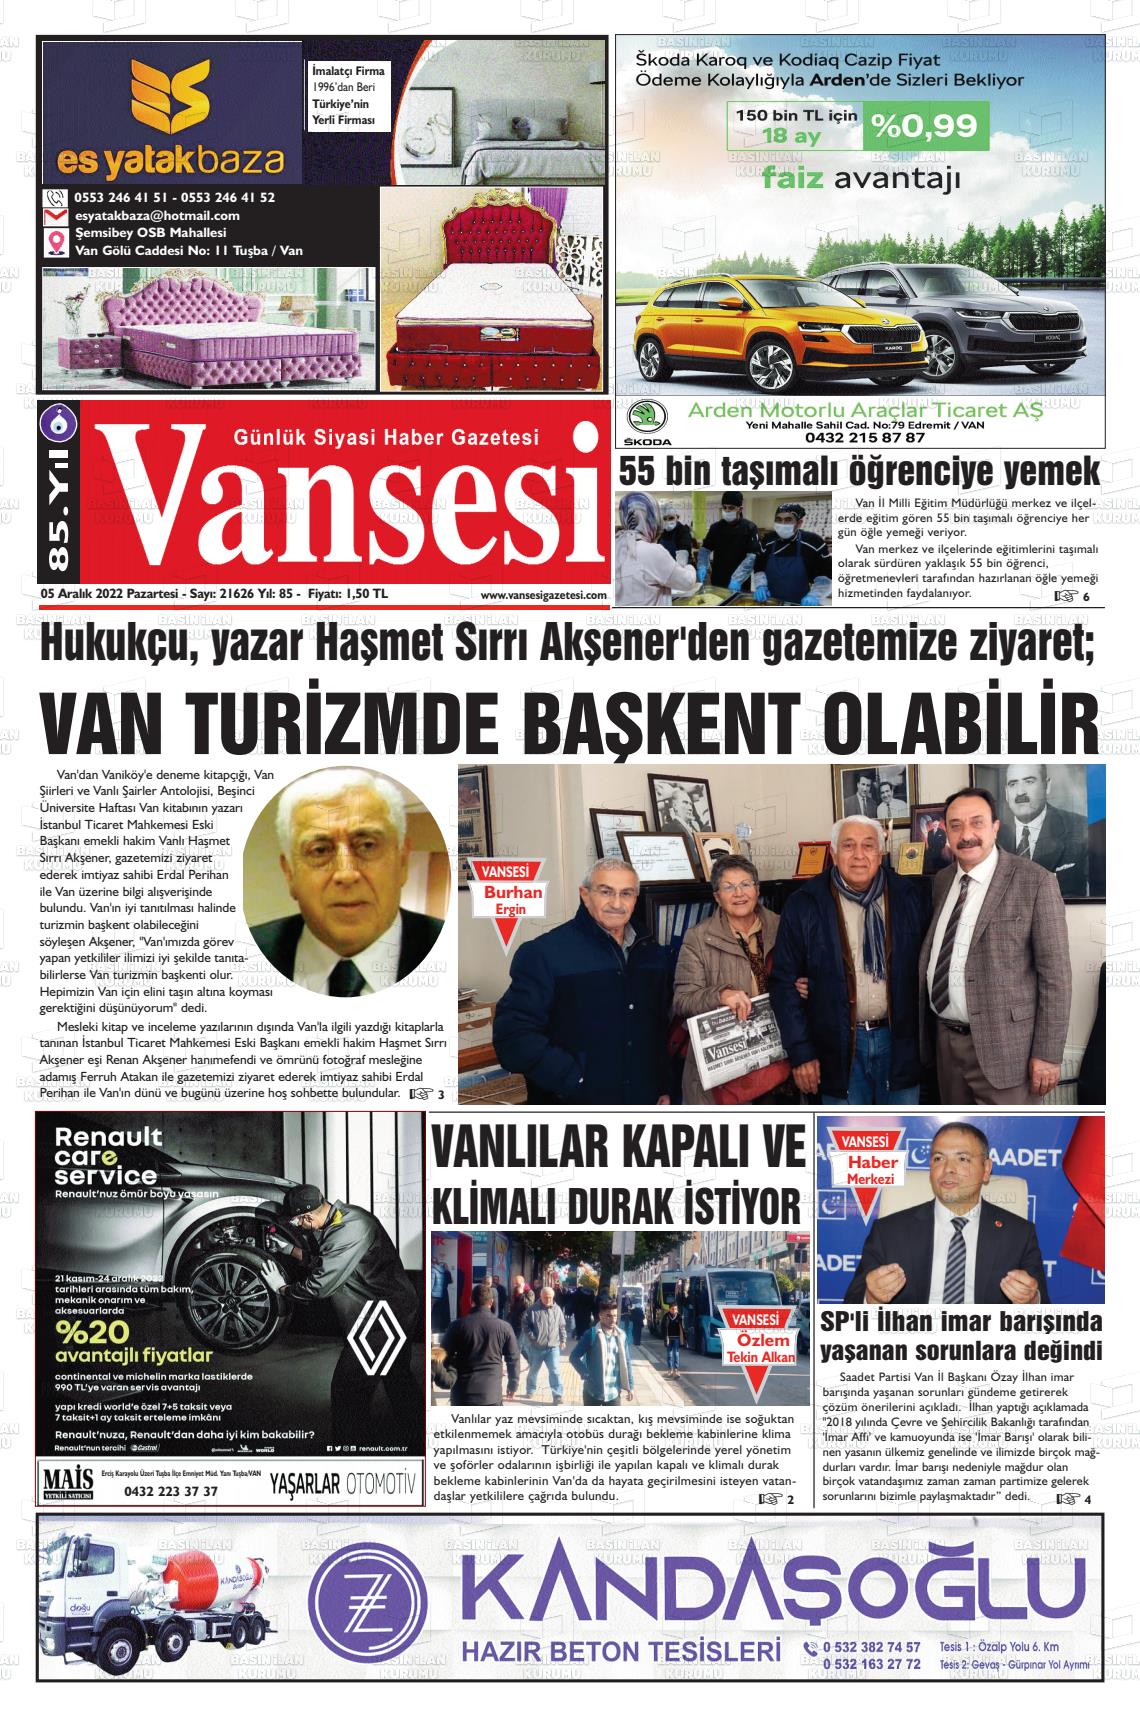 05 Aralık 2022 Vansesi Gazete Manşeti